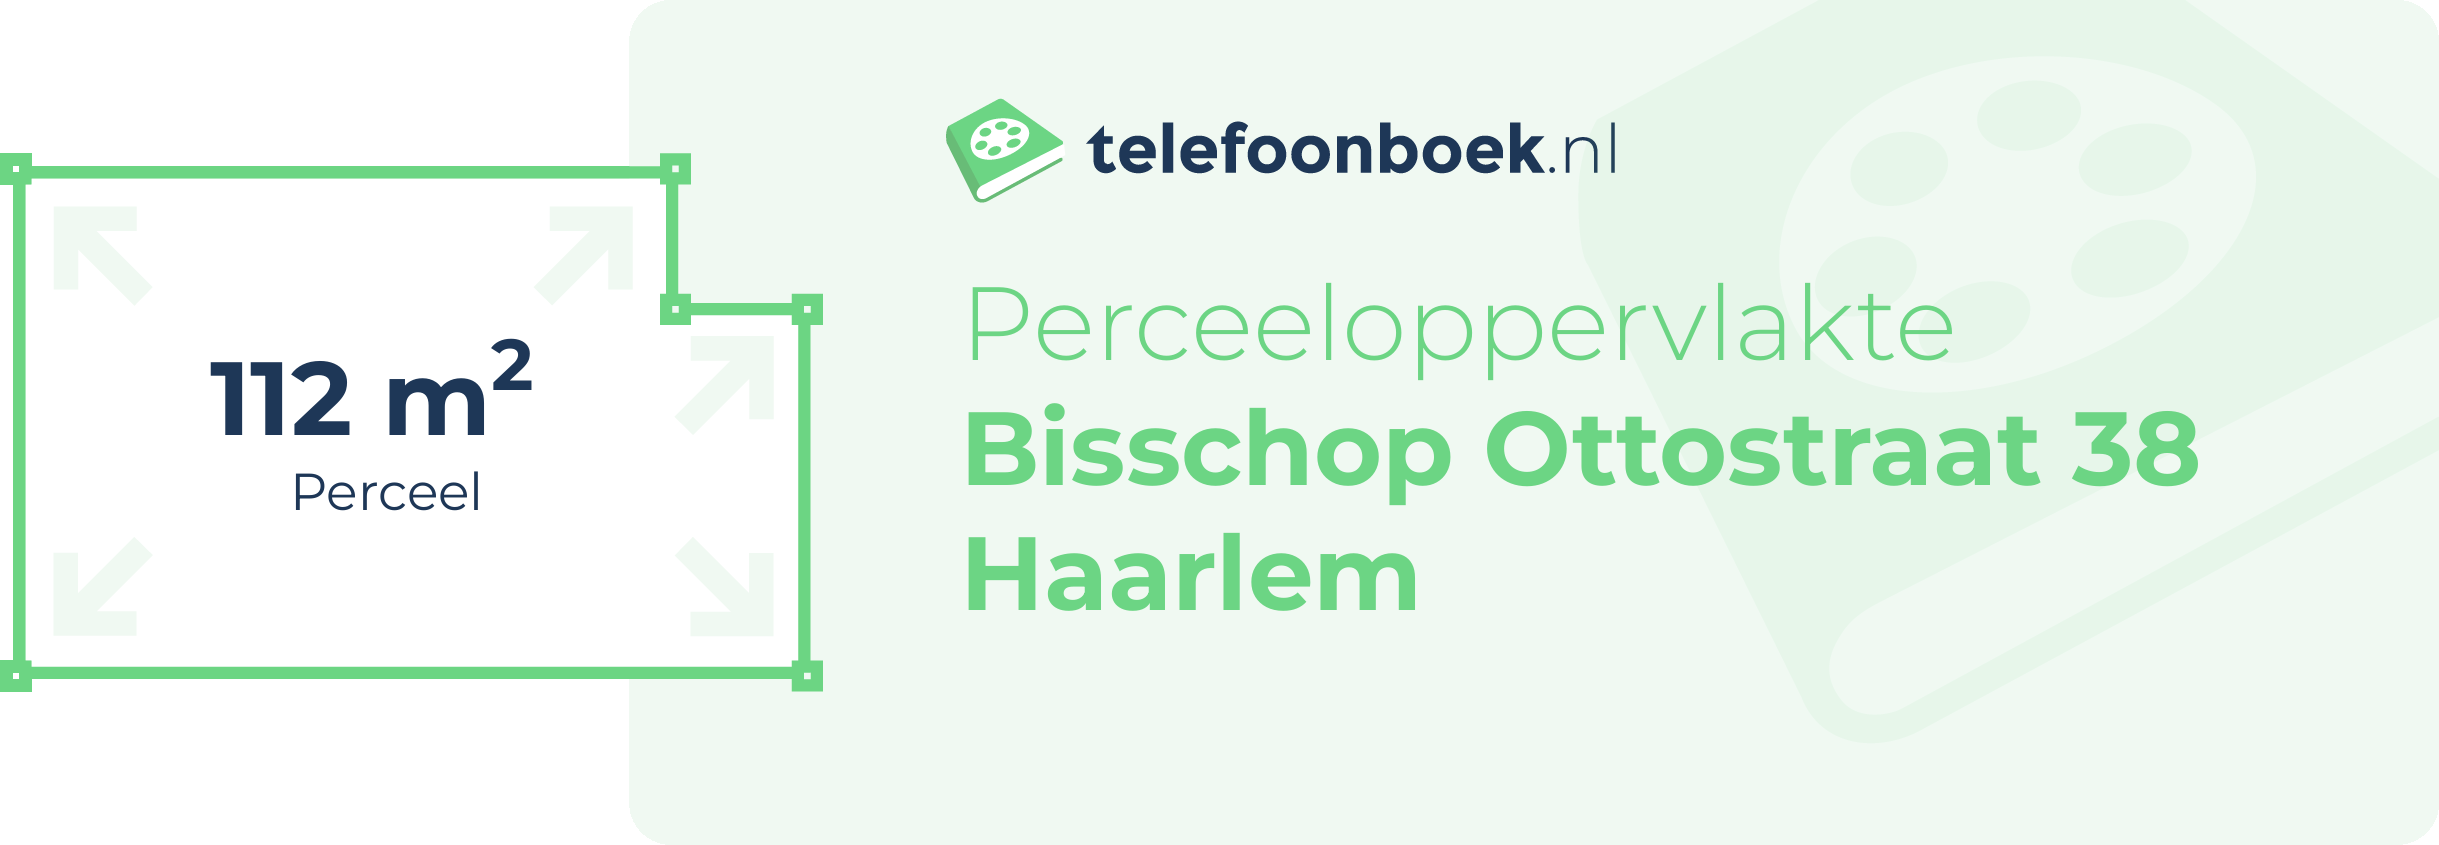 Perceeloppervlakte Bisschop Ottostraat 38 Haarlem